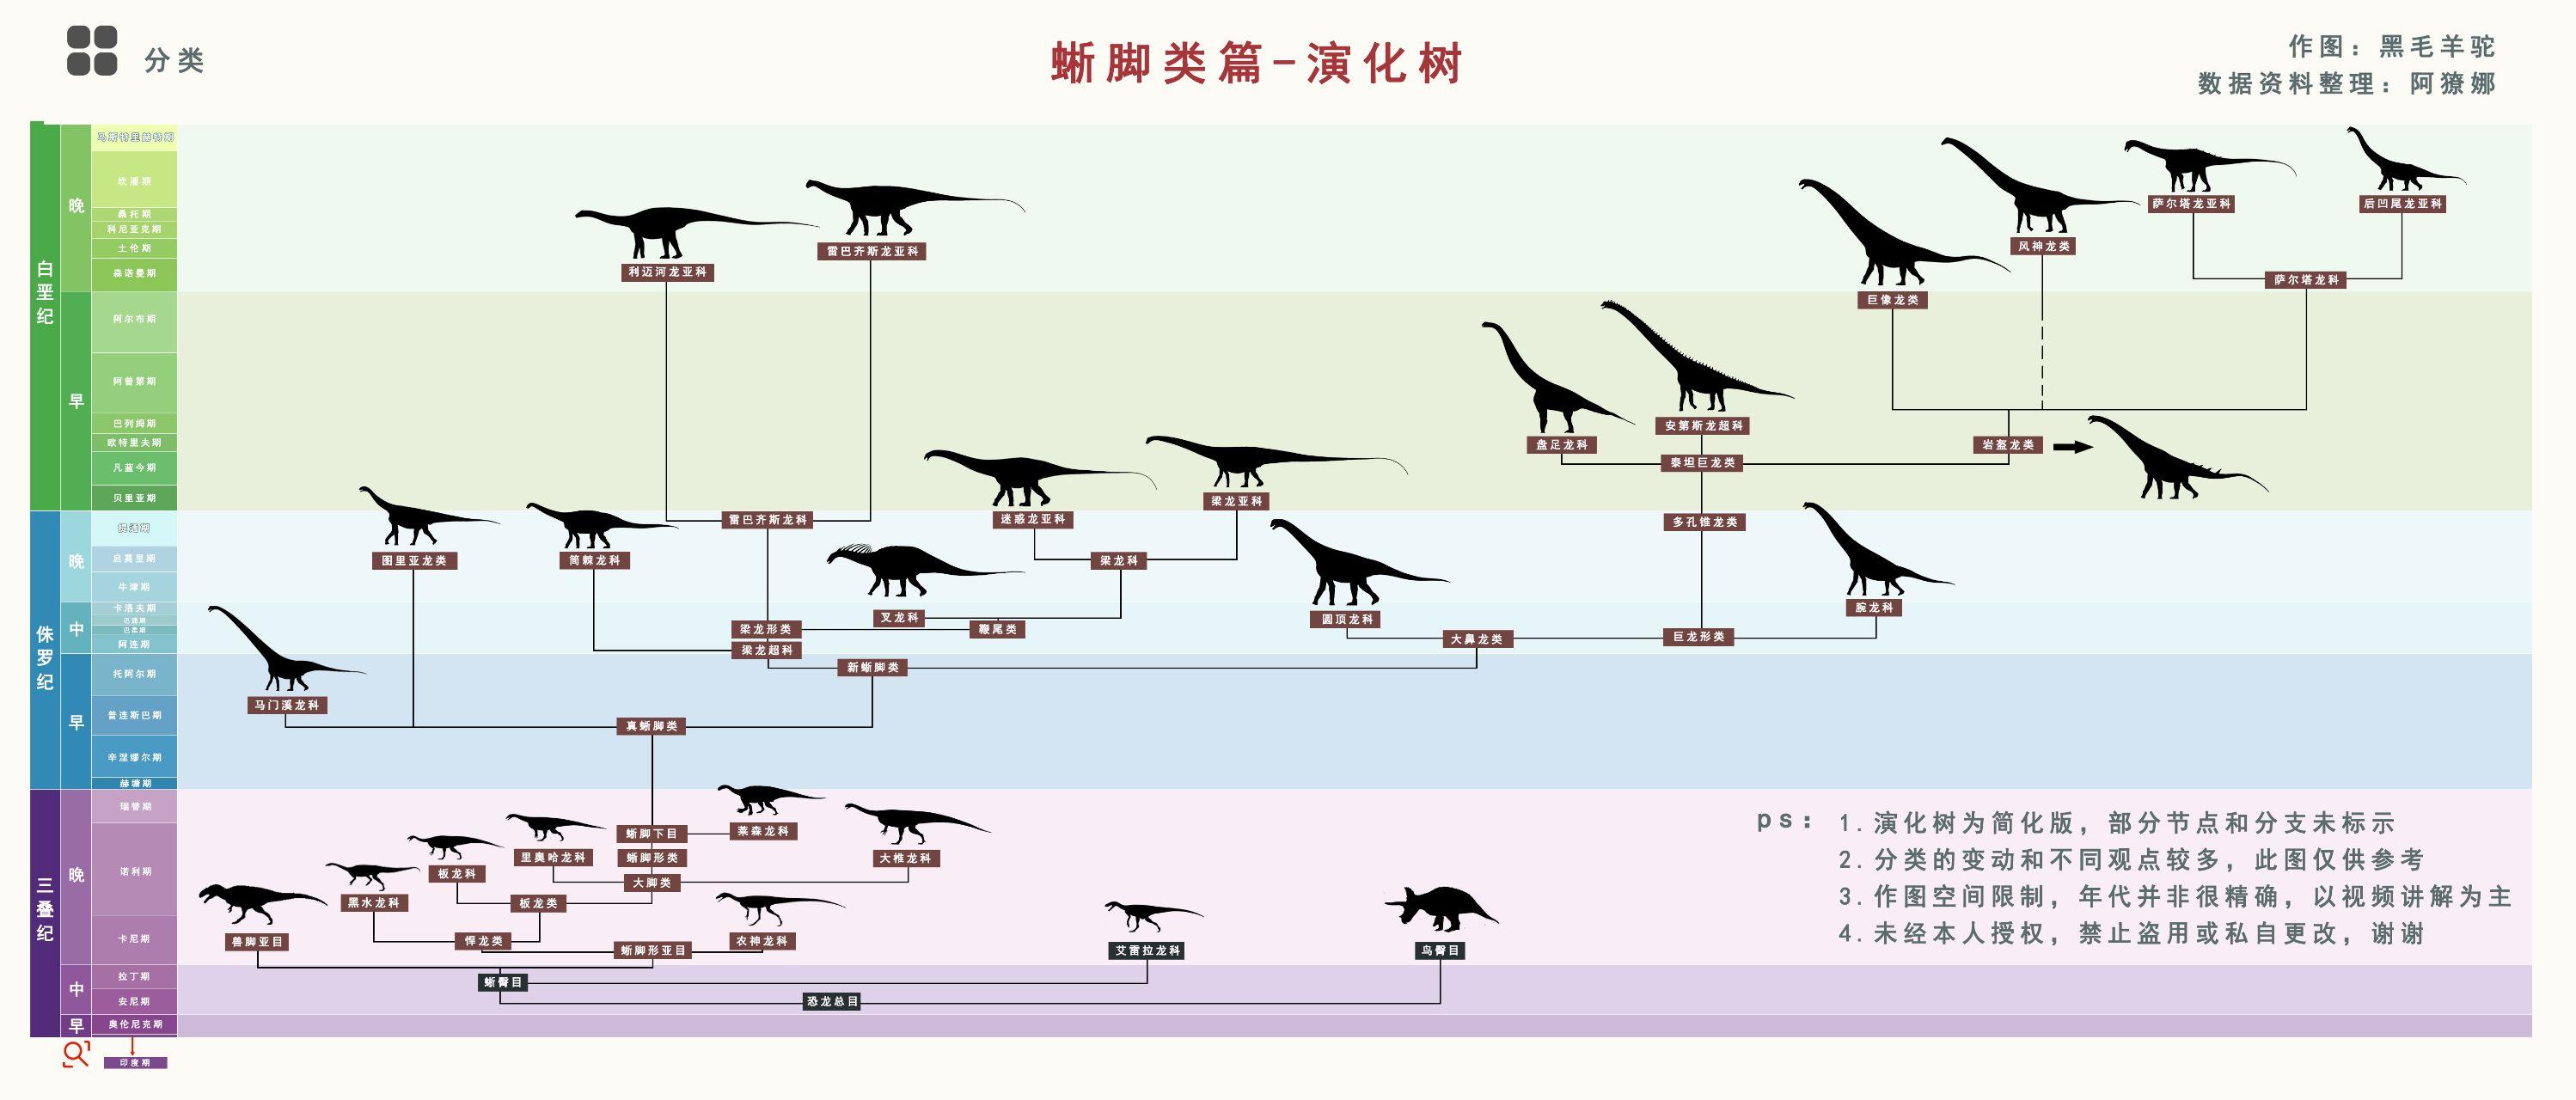 蜥蜴的进化过程图图片